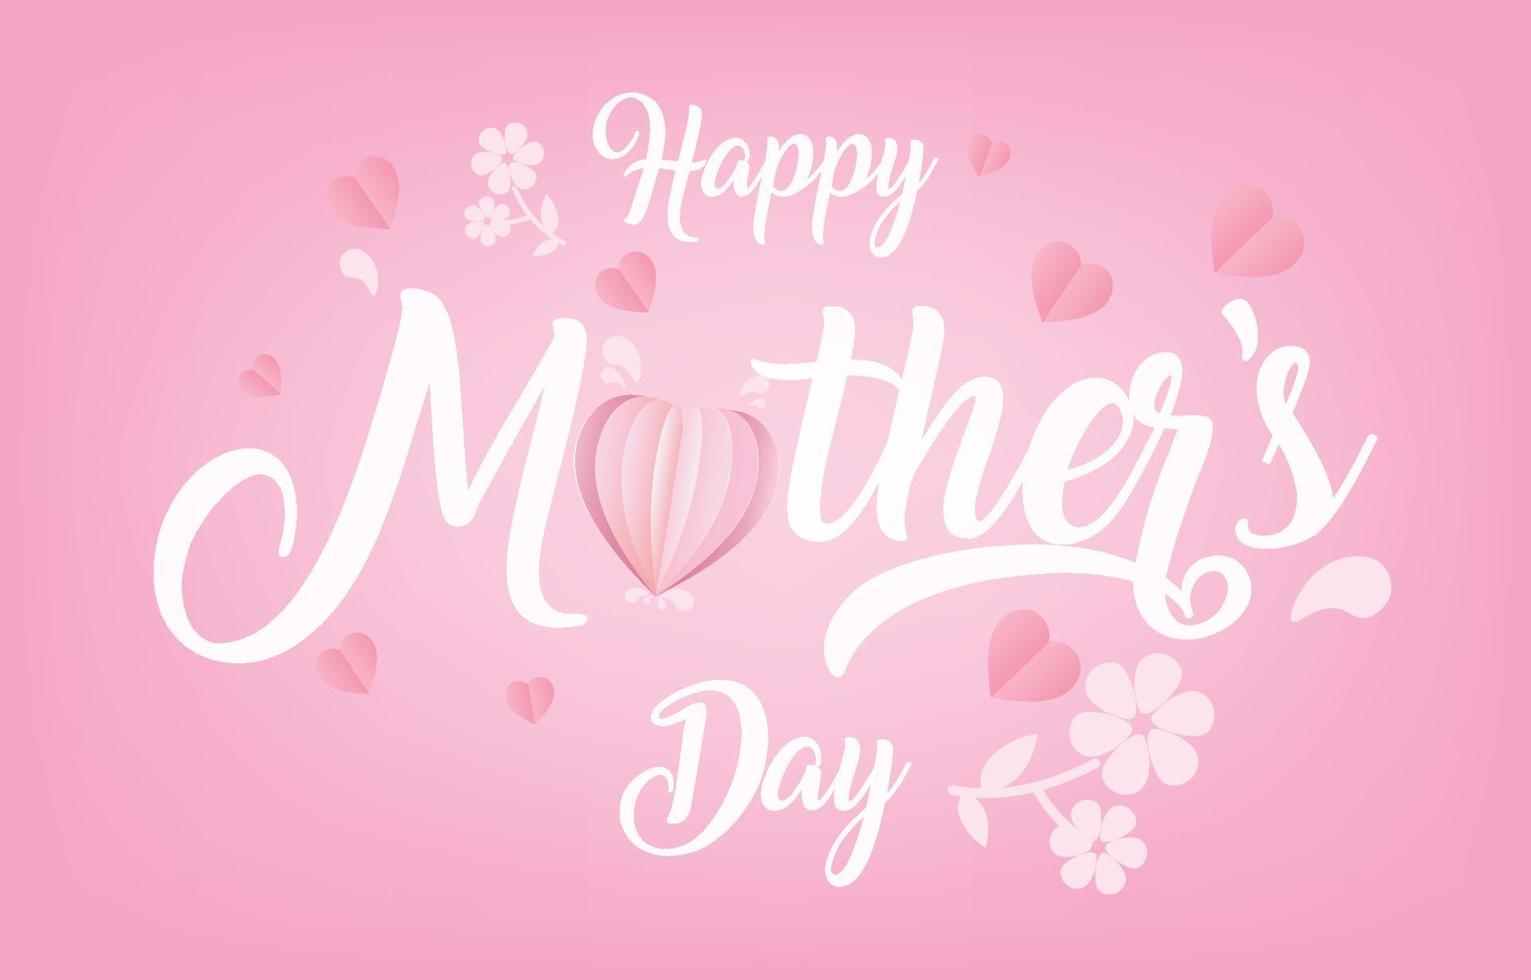 vettore della bandiera della cartolina d'auguri della festa della mamma con cuori volanti 3d rosa papercut.symbol di amore e lettere scritte a mano su sfondo rosa.